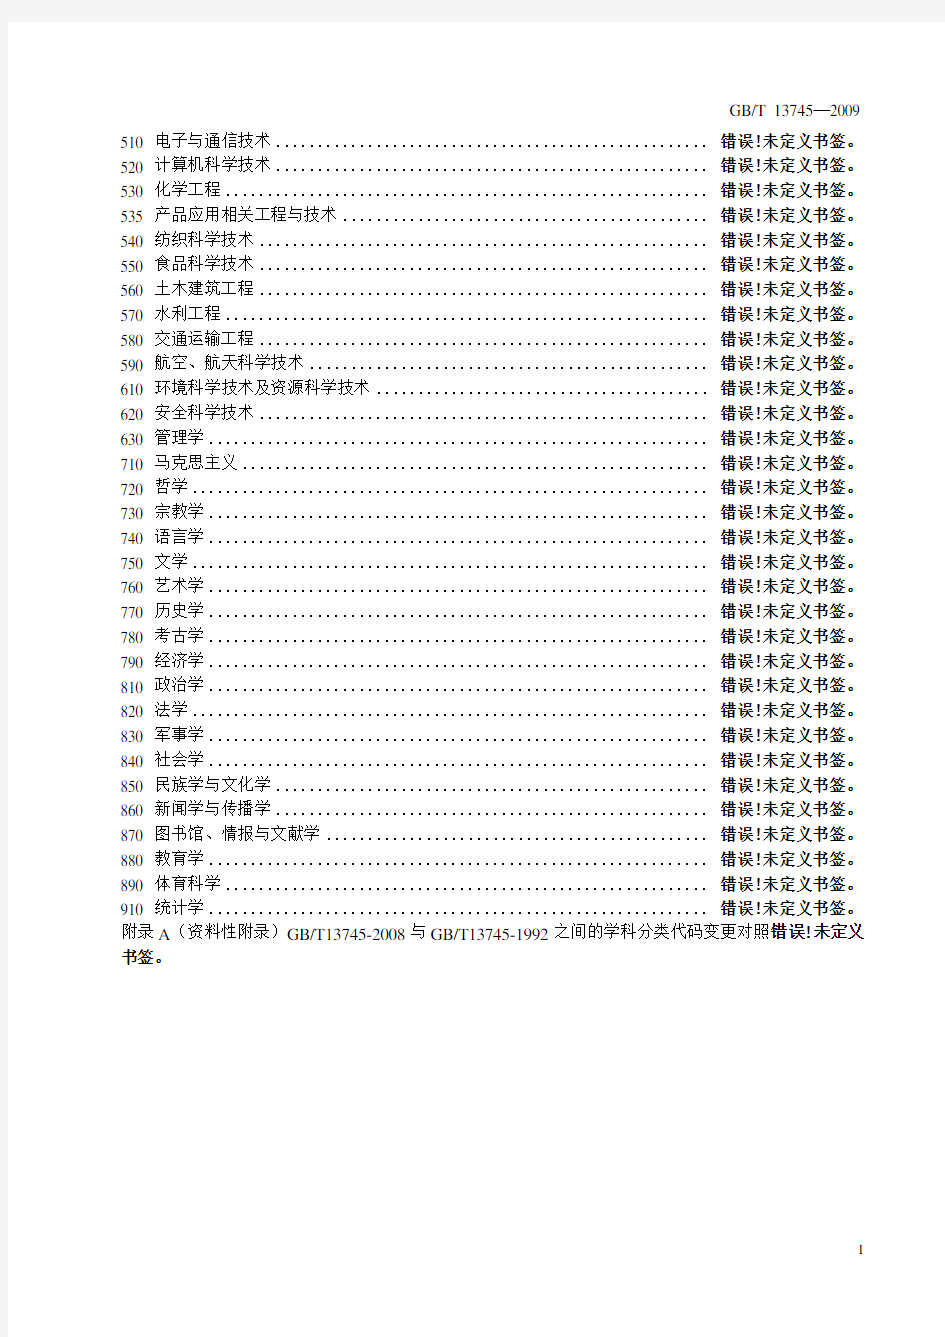 中华人民共和国学科分类与代码国家标准(GBT13745-2009)